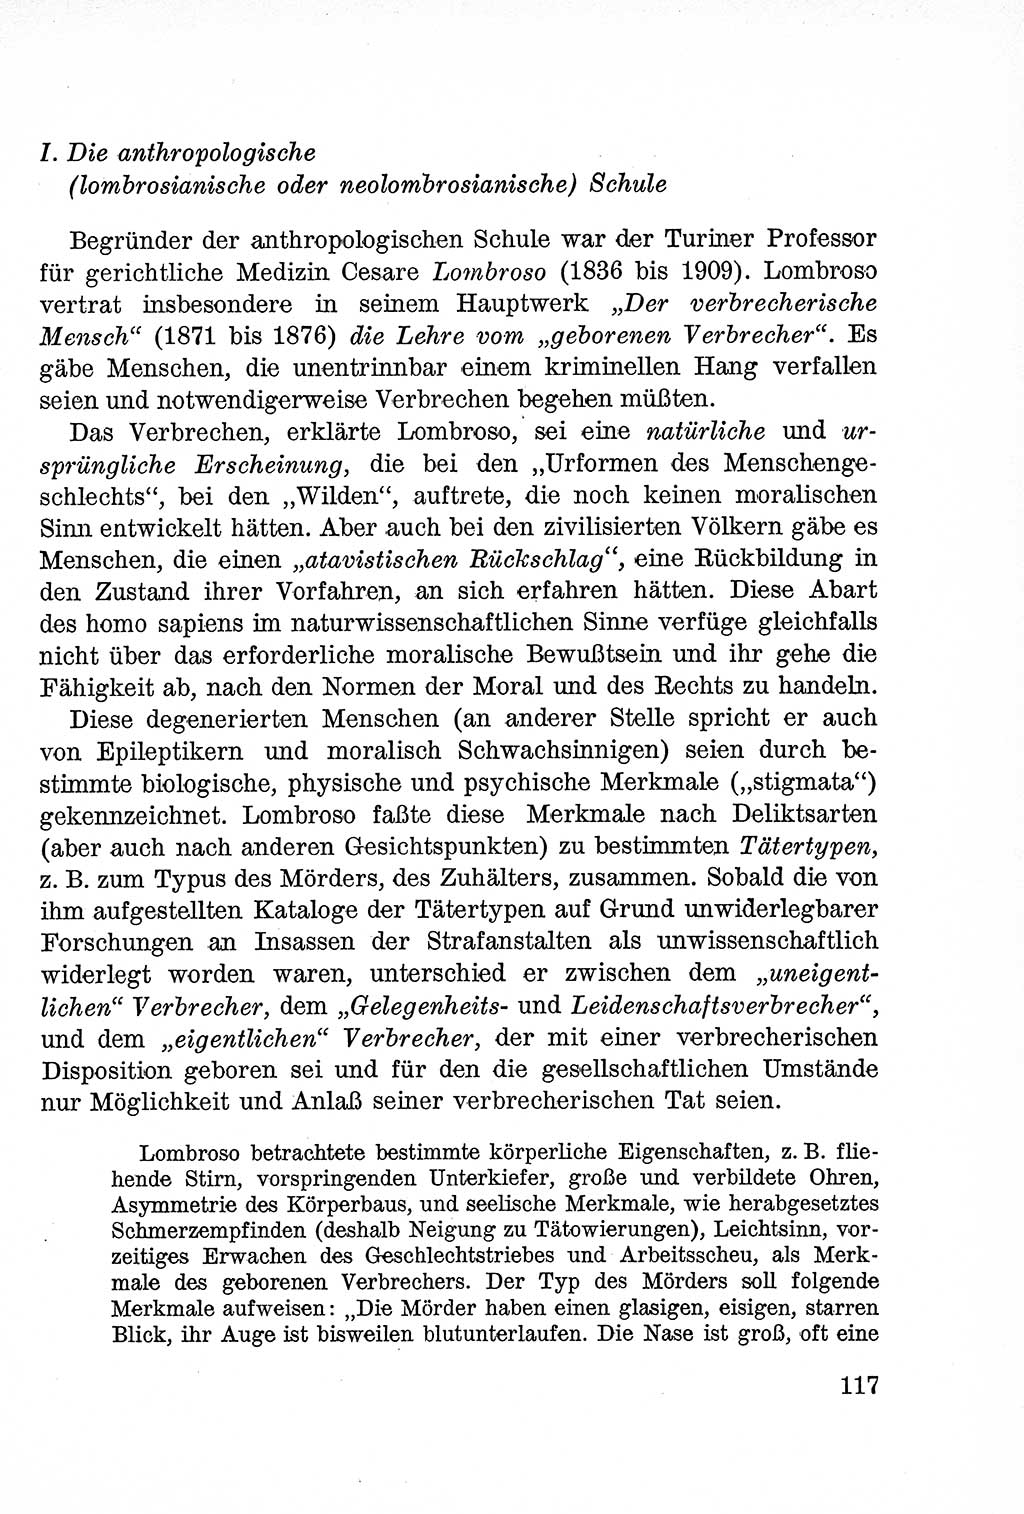 Lehrbuch des Strafrechts der Deutschen Demokratischen Republik (DDR), Allgemeiner Teil 1957, Seite 117 (Lb. Strafr. DDR AT 1957, S. 117)